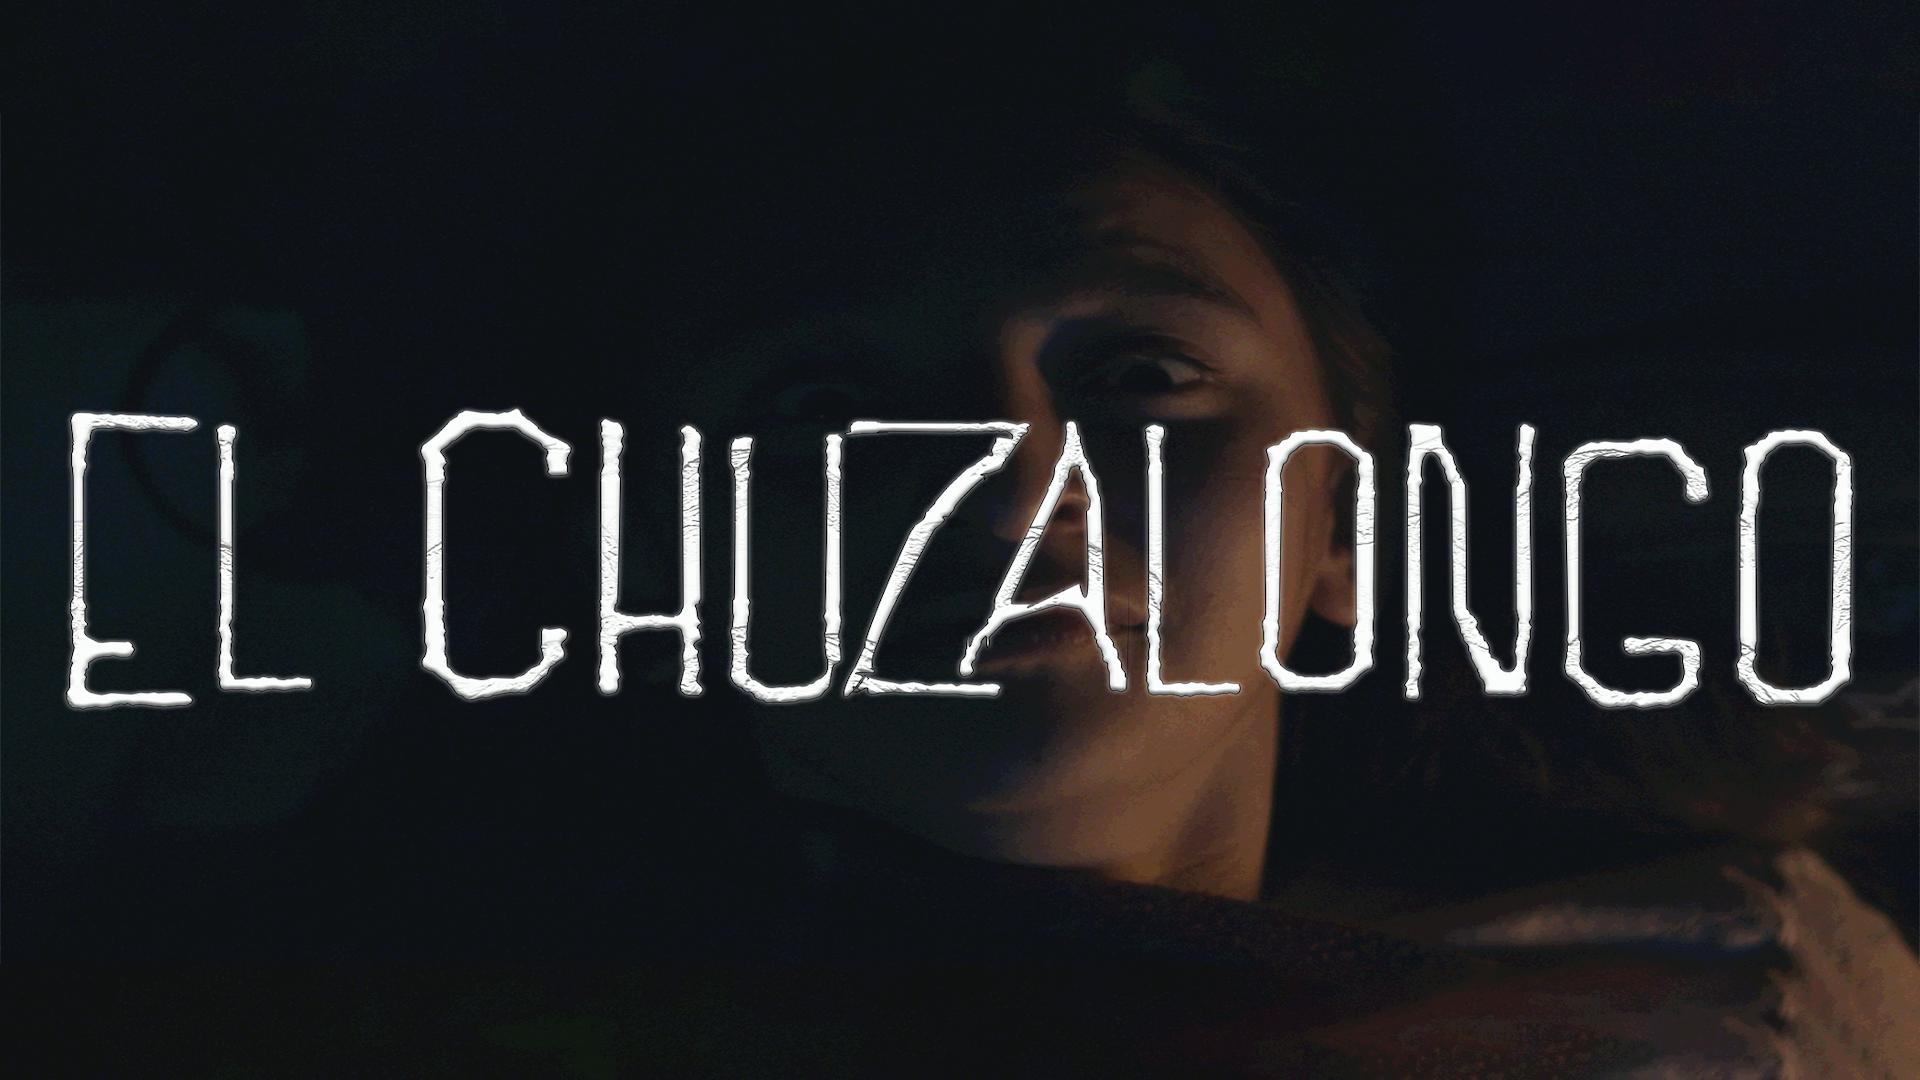 The Chuzalongo